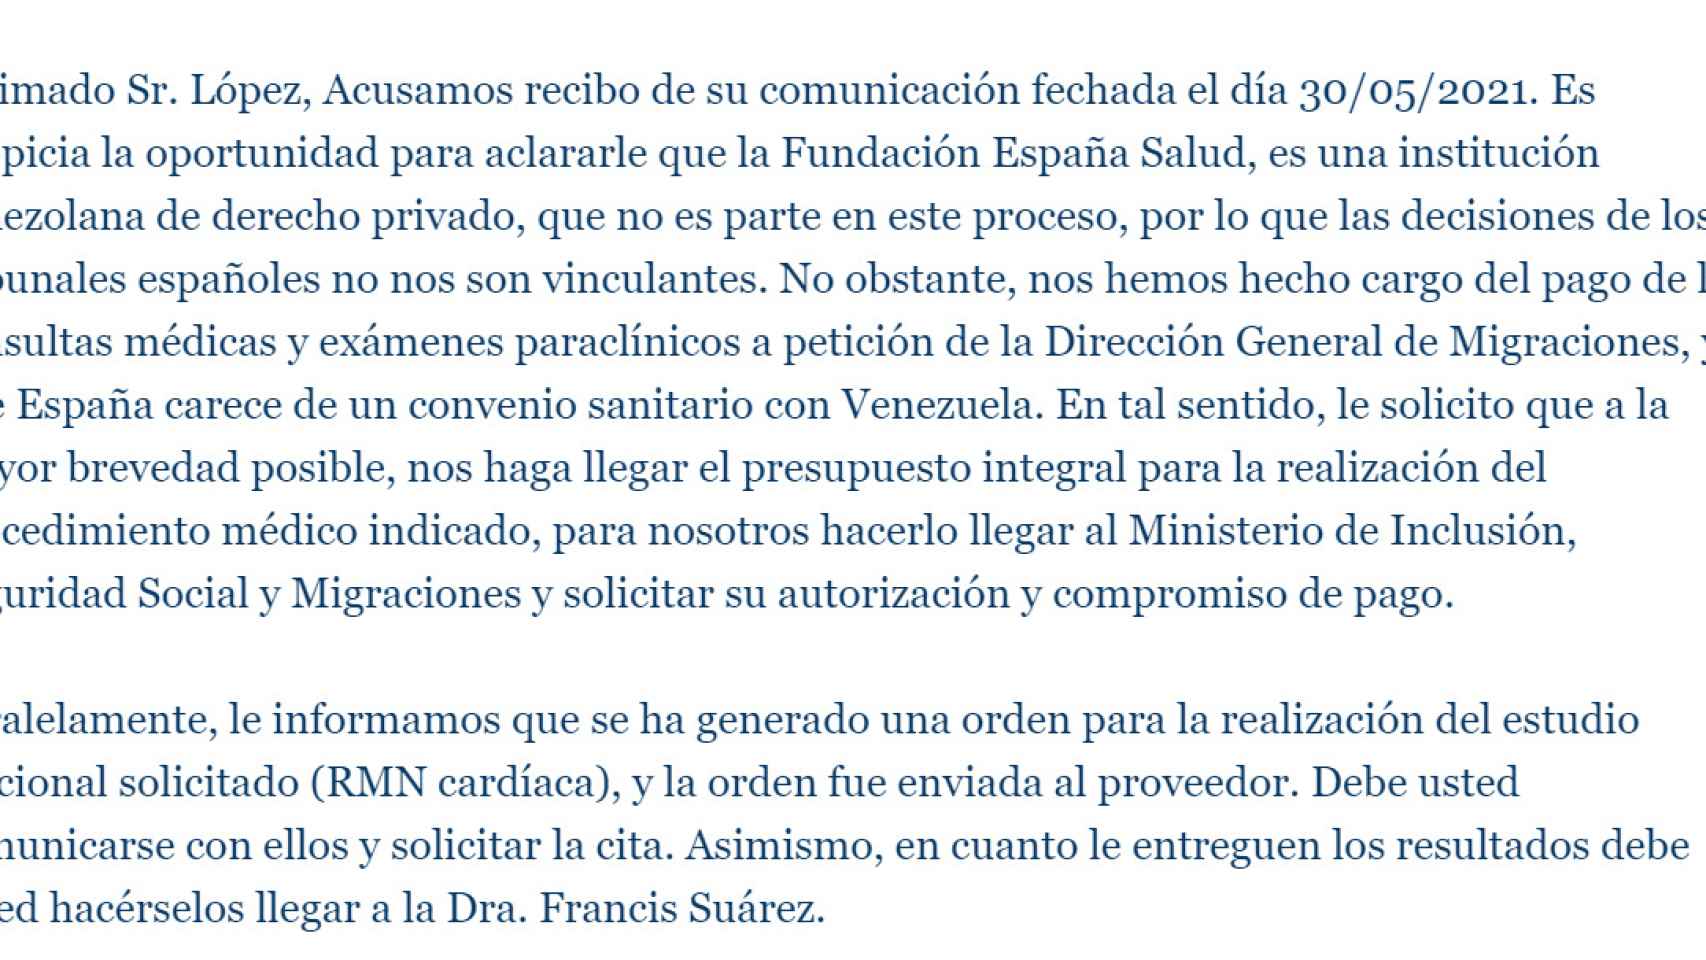 La Fundación creada y controlada por la Embajada de España en Venezuela alega que no está sometida a las decisiones de los tribunales españoles.